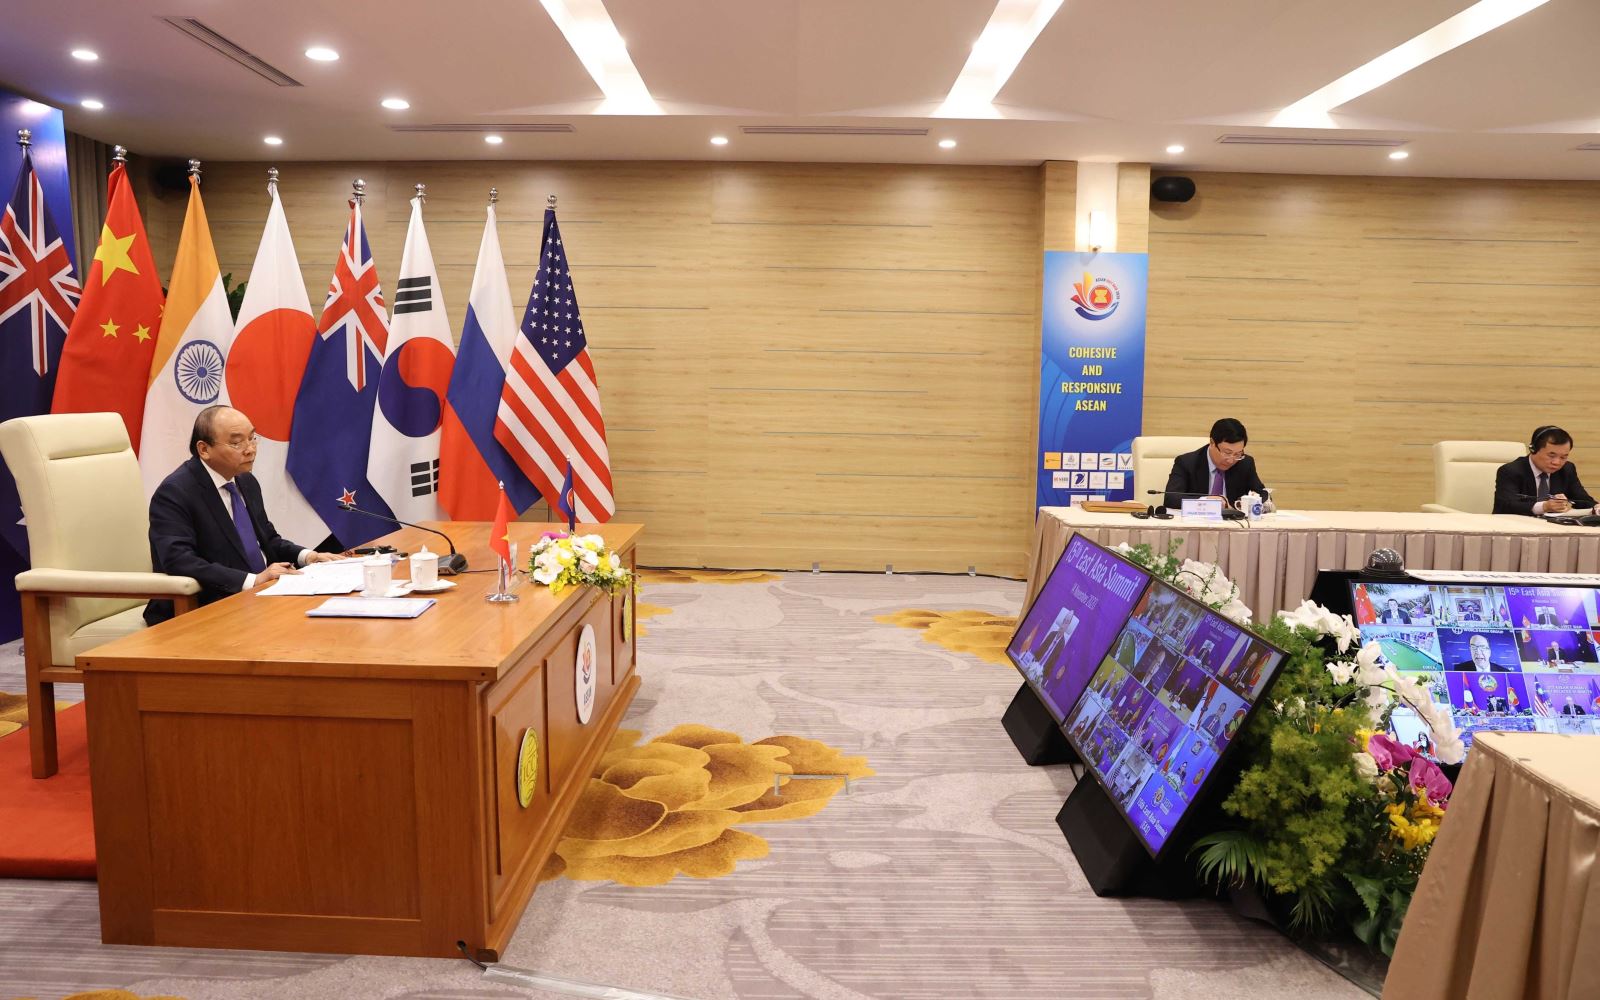 Thế giới tuần qua: ASEAN thông qua nhiều sáng kiến quan trọng; nước Mỹ vẫn bế tắc sau bầu cử